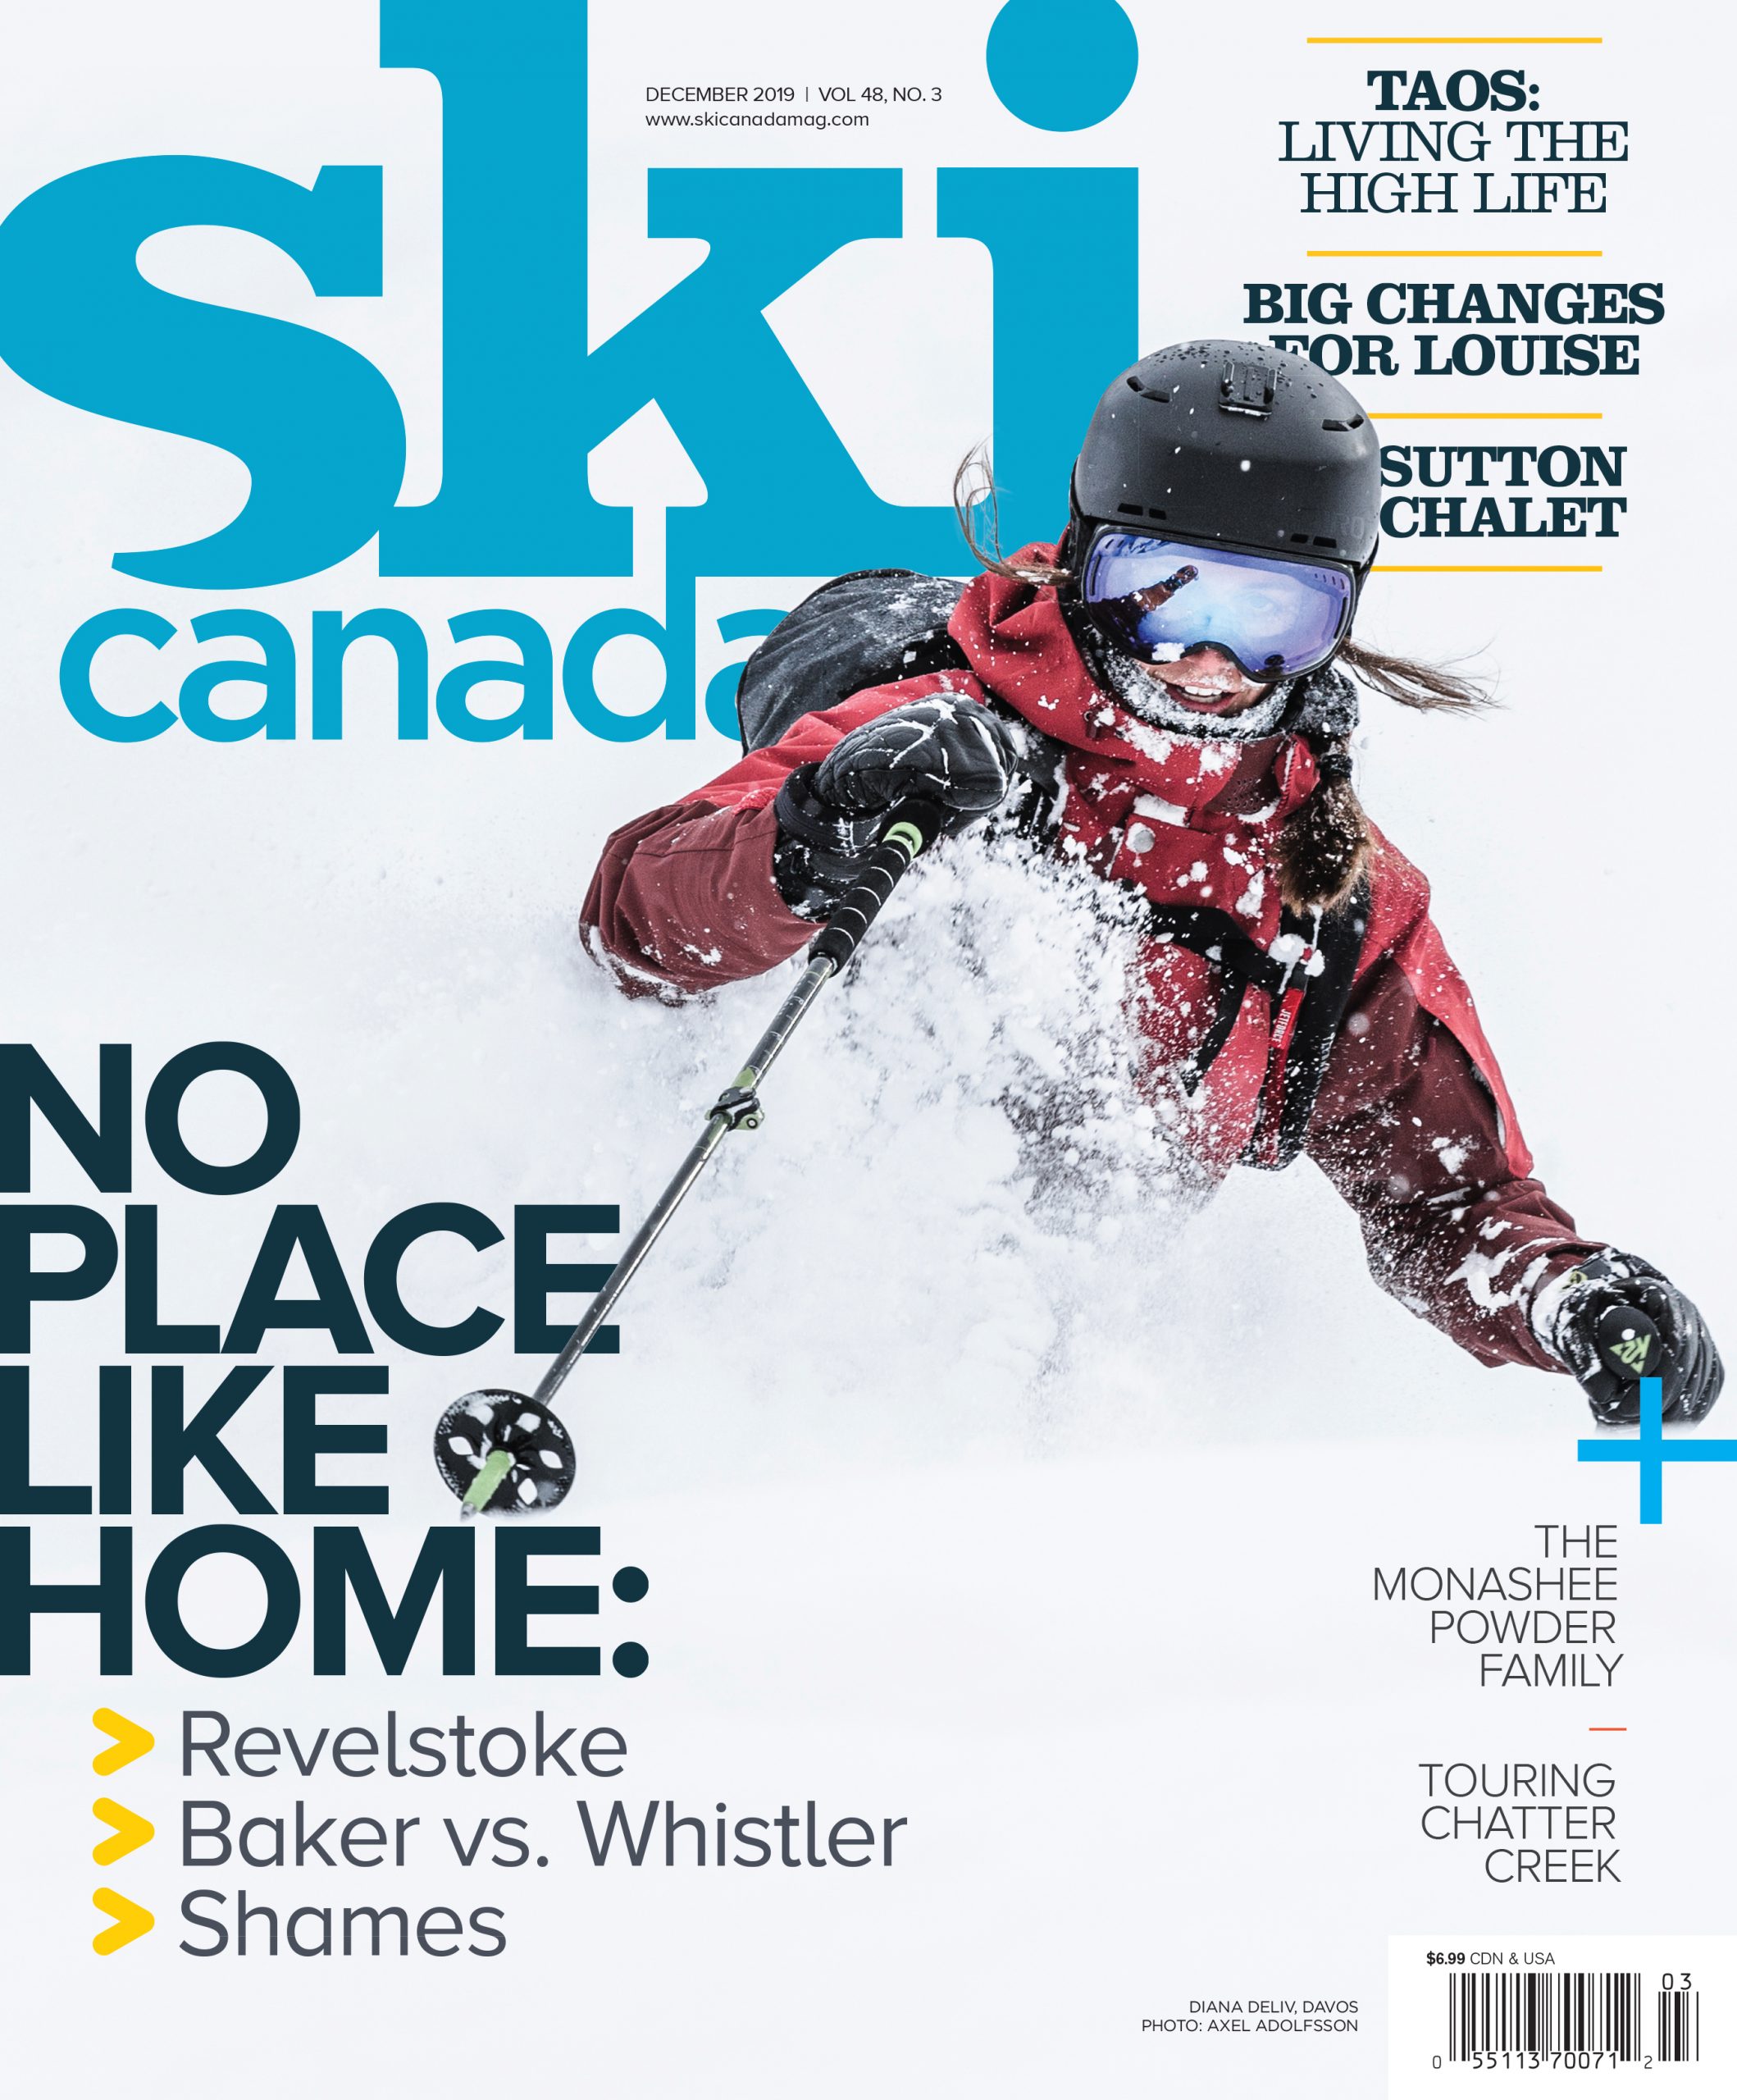 Ski Canada cover